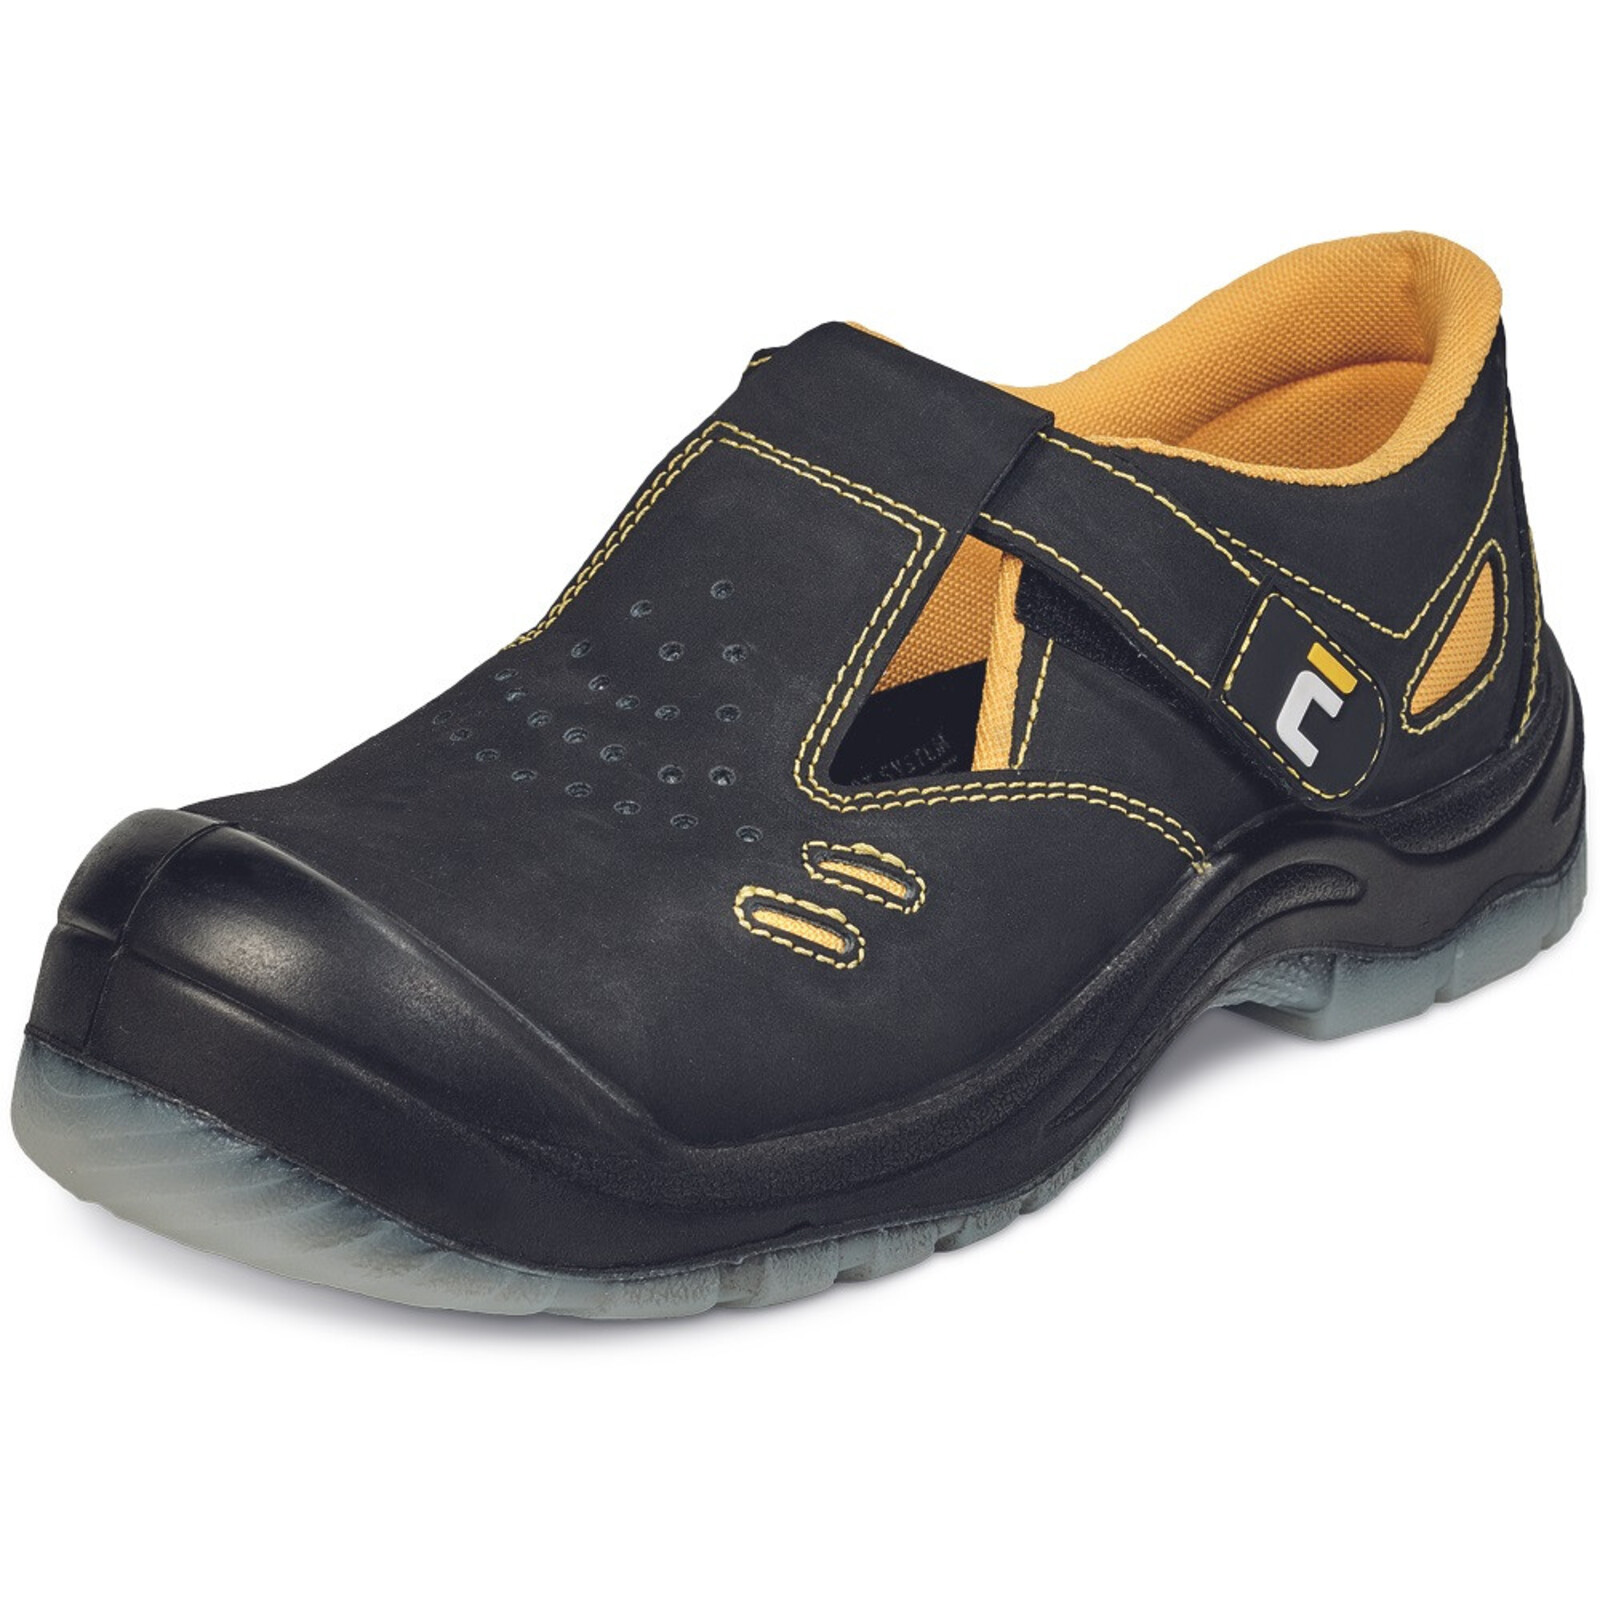 Bezpečnostné sandále Cerva BK TPU MF S1P SRC - veľkosť: 46, farba: čierna/žltá